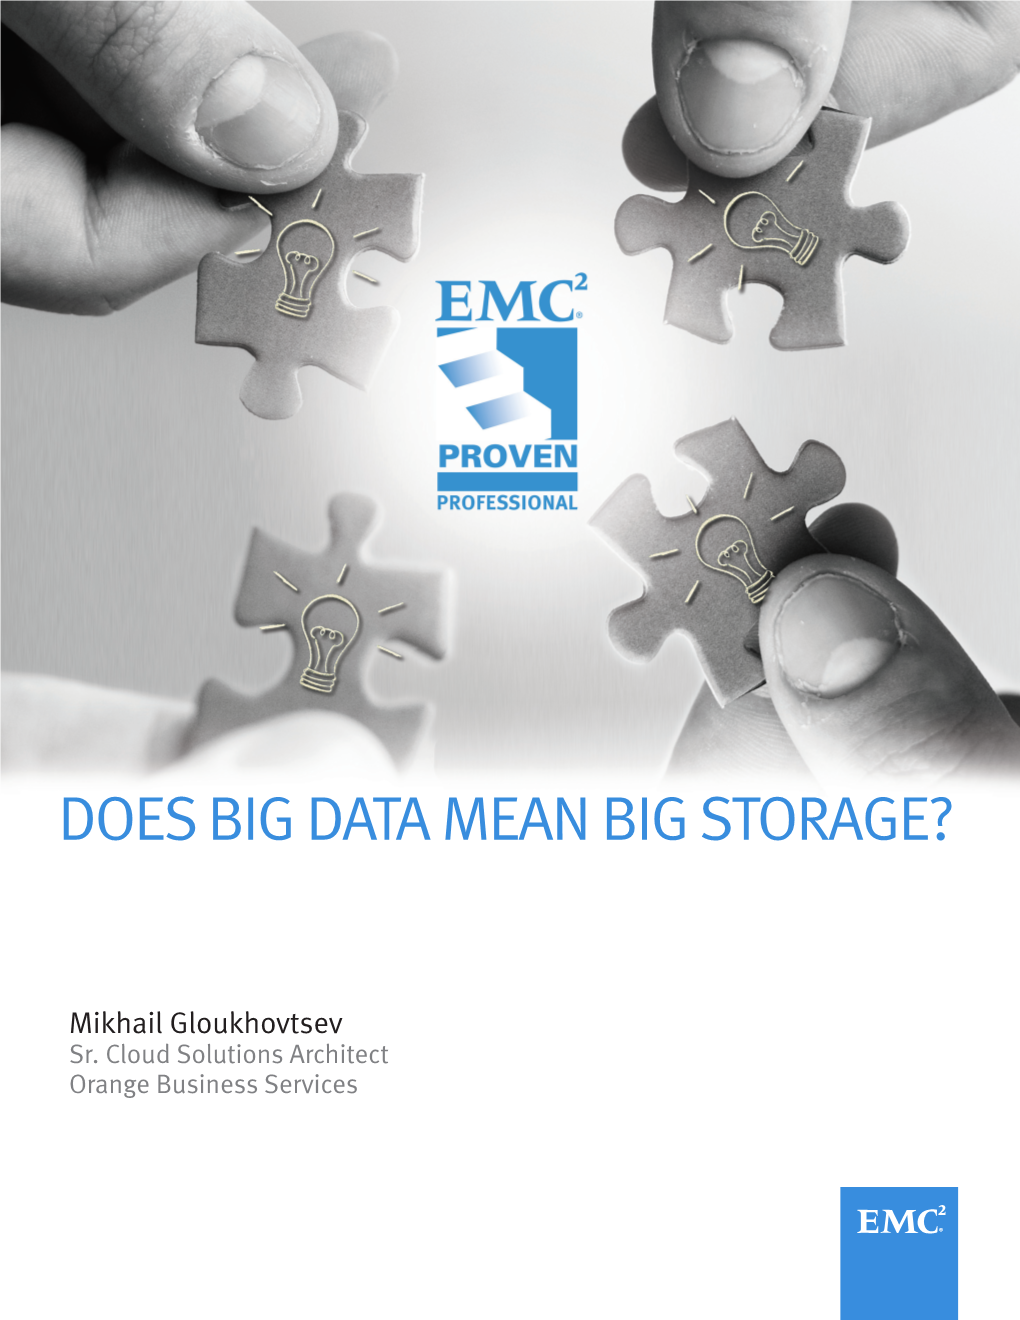 Does Big Data Mean Big Storage?